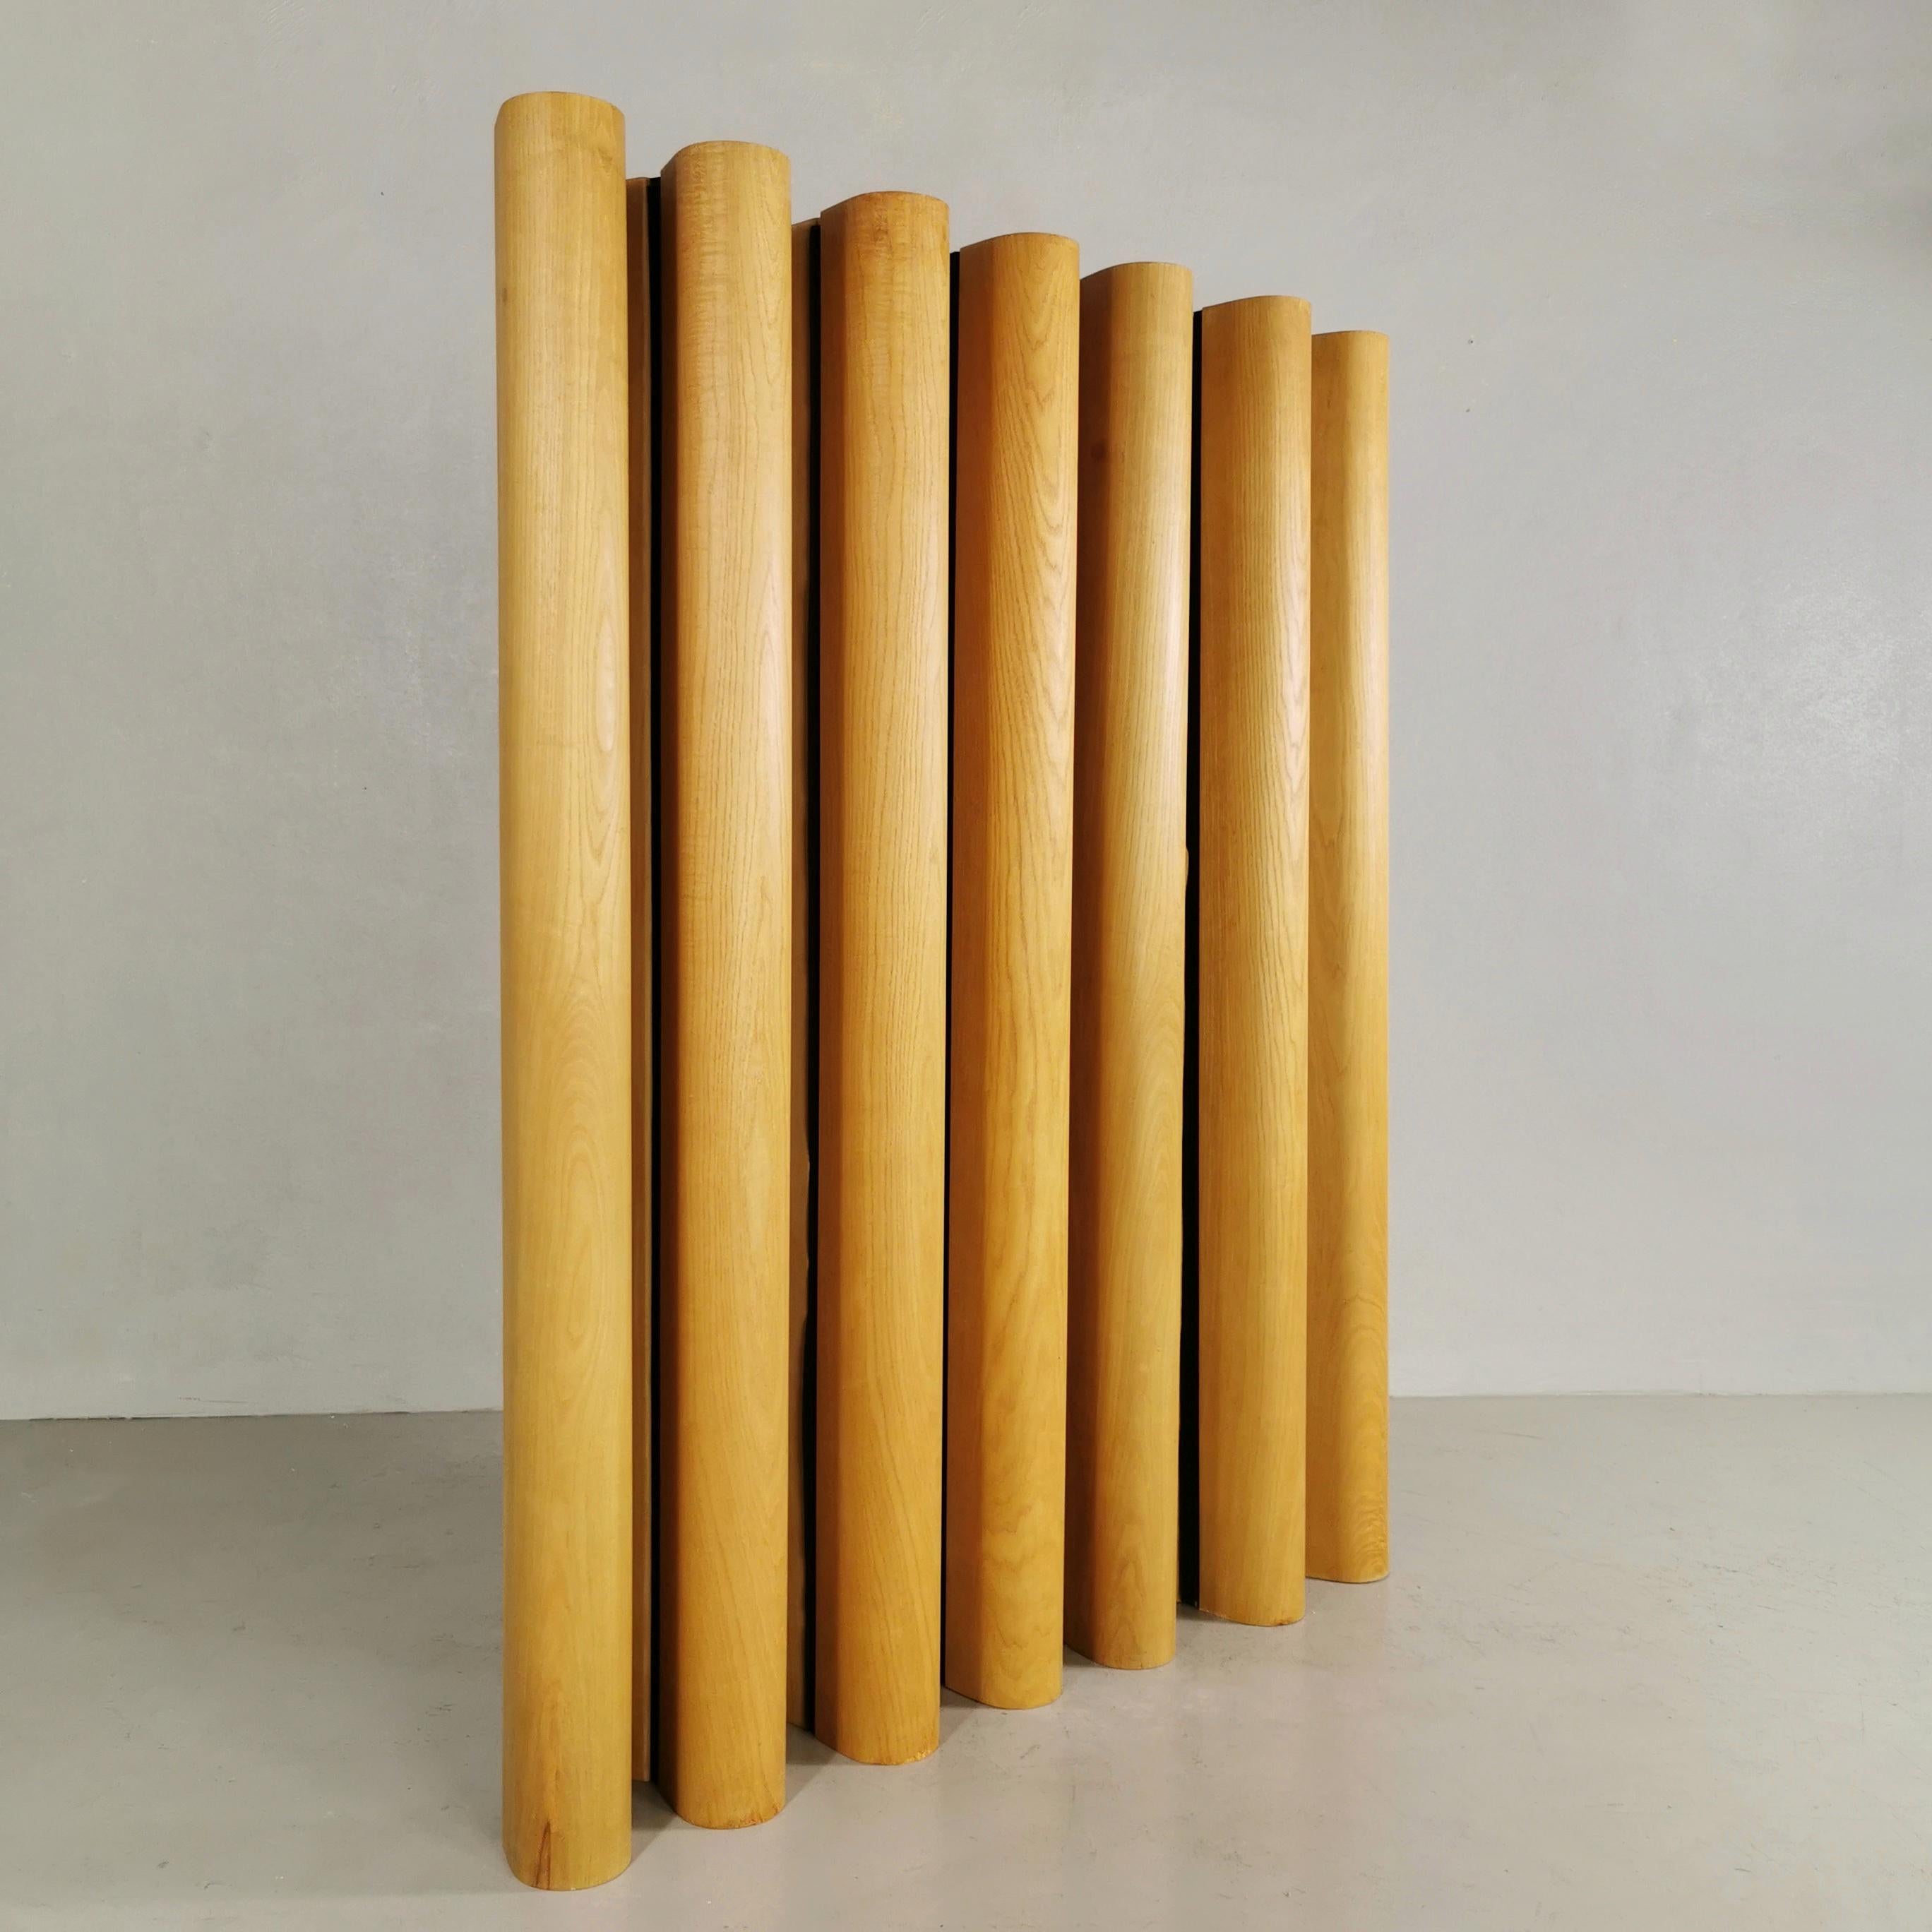 Système modulaire en bois de frêne naturel, composé d'éléments courbes placés les uns contre les autres et reliés par un système de bandes velcro qui garantit la flexibilité.
Contreplaqué de chêne cintré de haute qualité
Conçu en 1960 par Gianfranco